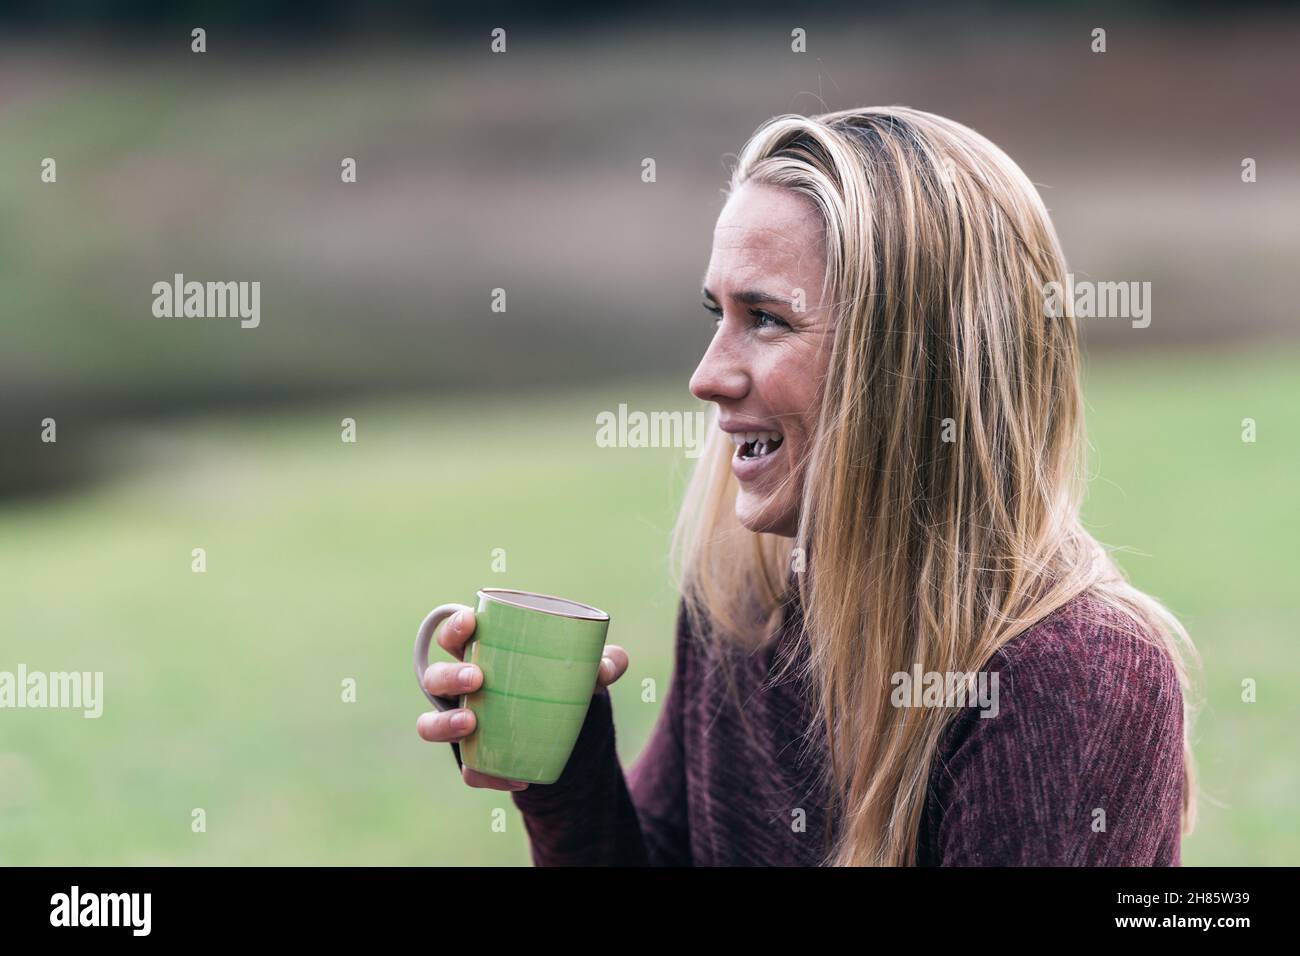 Femme blonde souriante qui boit du thé dans un parc Banque D'Images